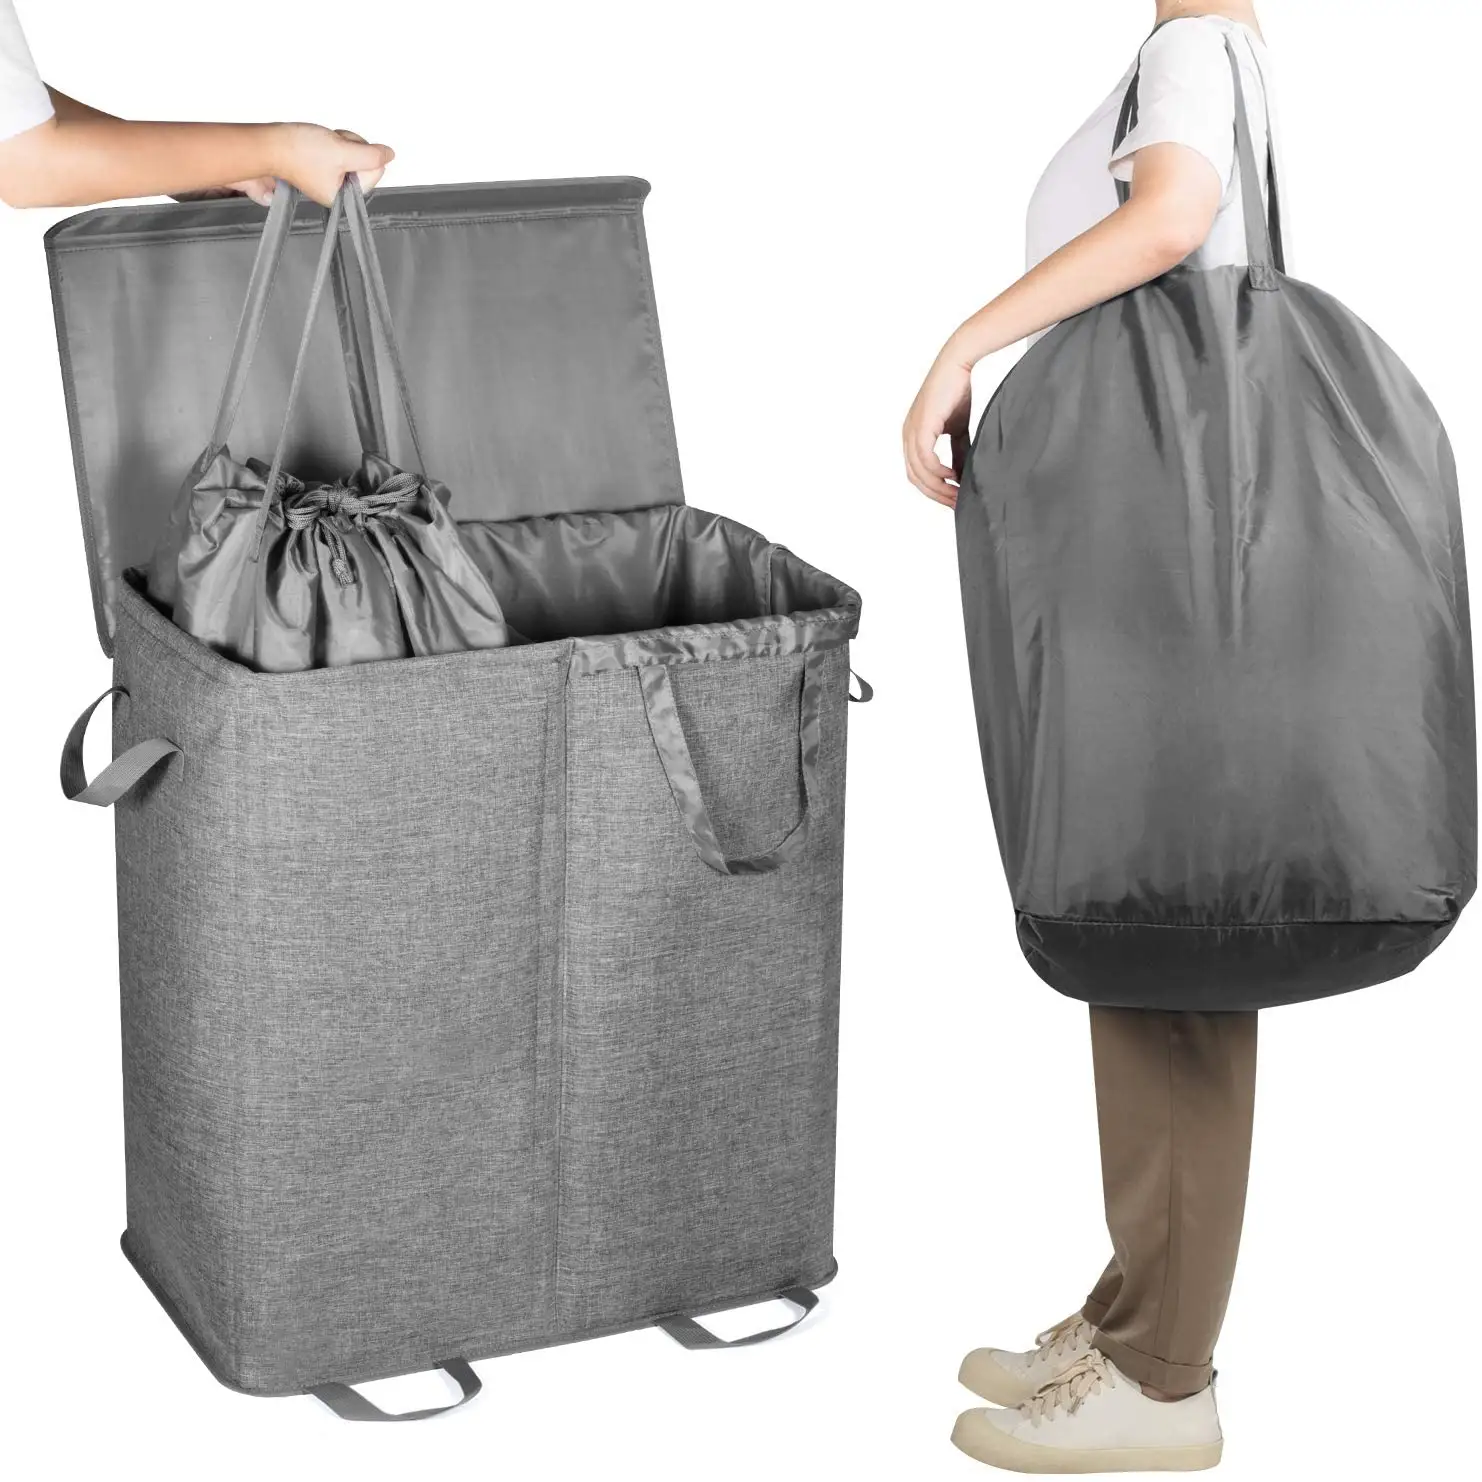 Doppelte Wäsche korb Taschen Große zusammen klappbare 2 Teiler Schmutzige Kleidung Wäsche korb mit Deckel und abnehmbar